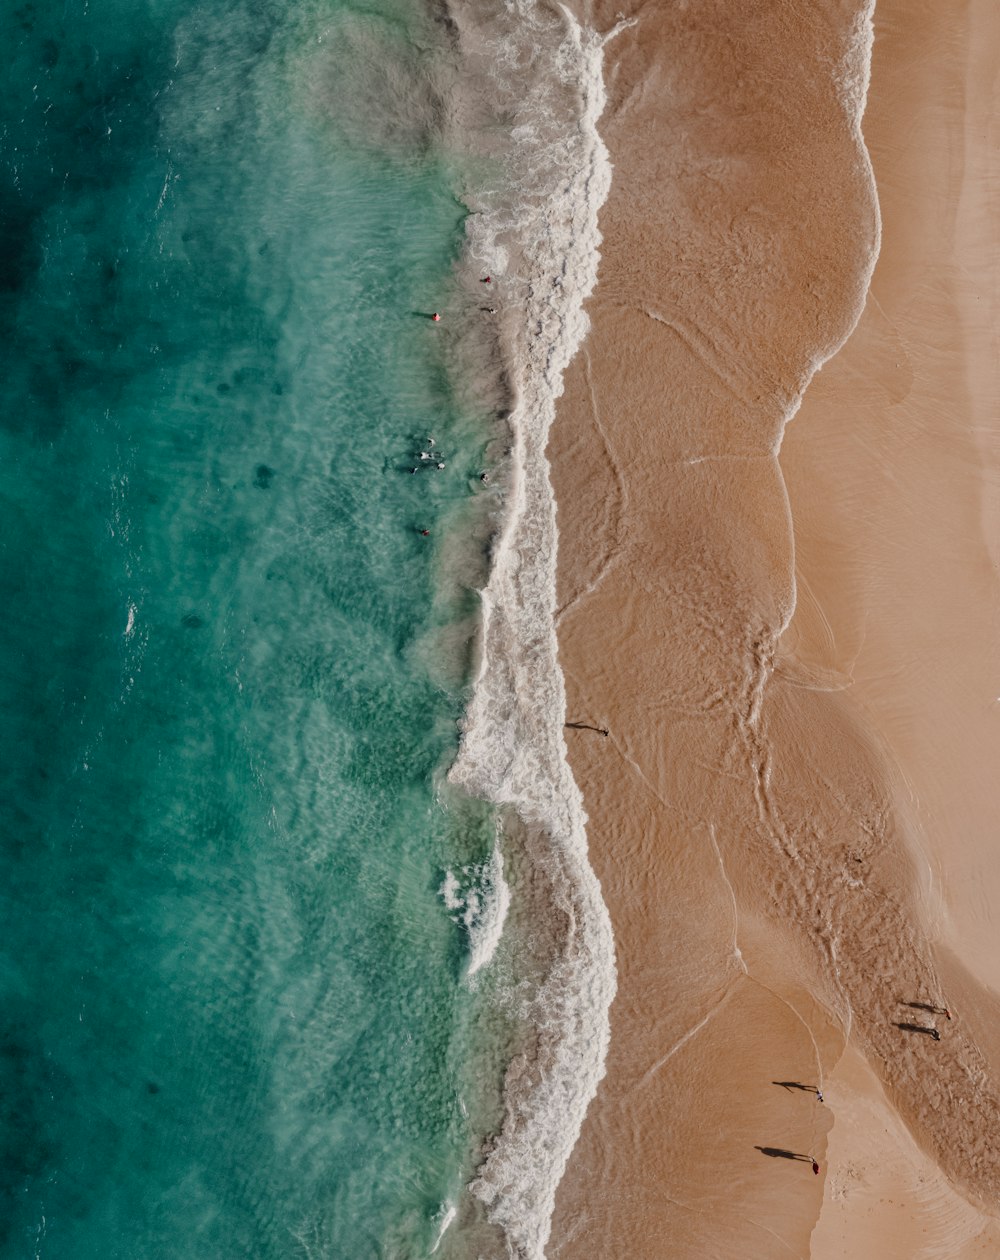 una veduta aerea di una spiaggia con persone in acqua